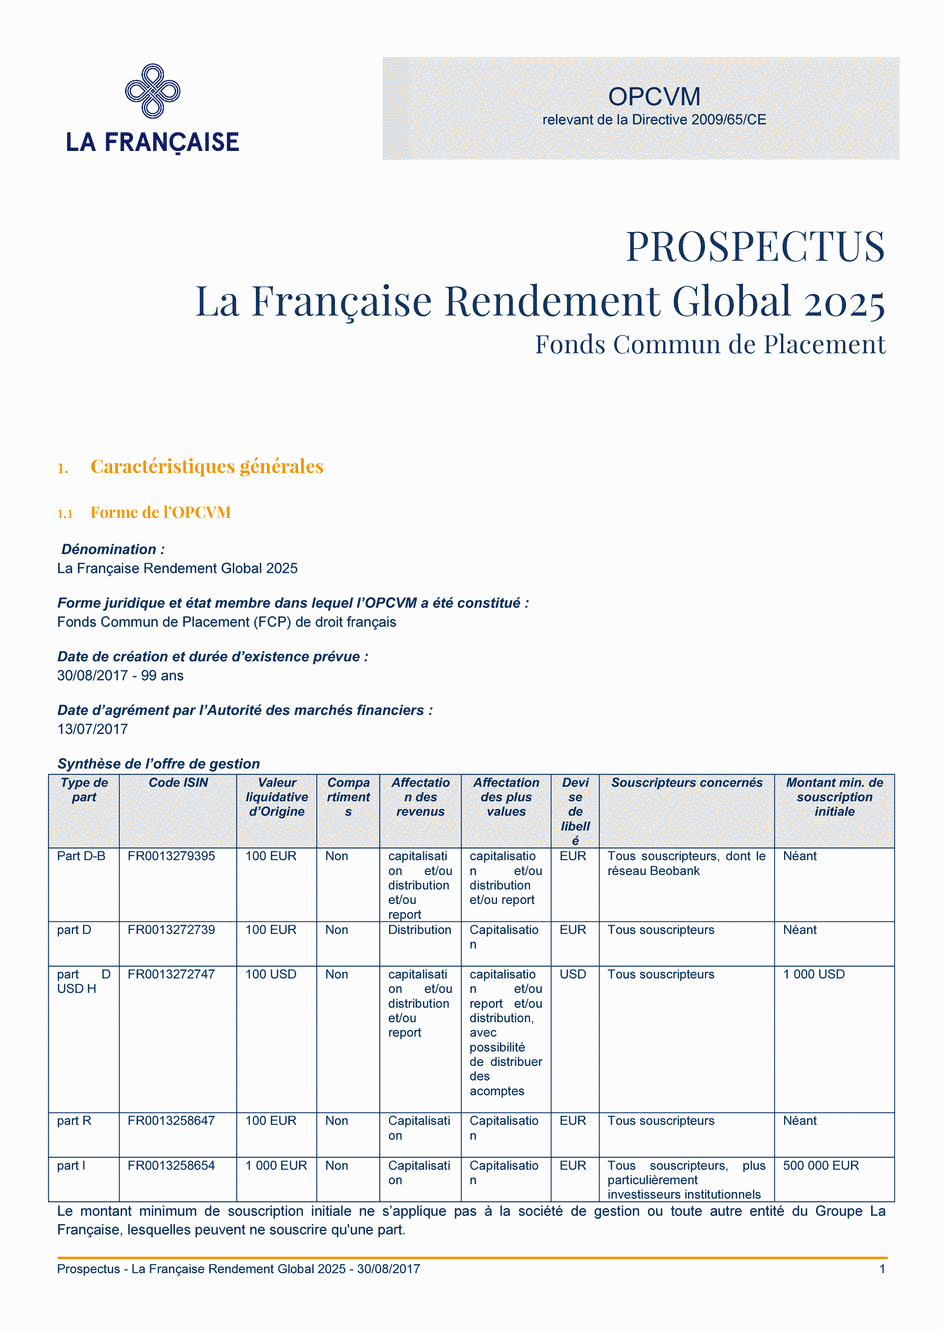 Prospectus La Française Rendement Global 2025 - Part R - 30/08/2017 - Français